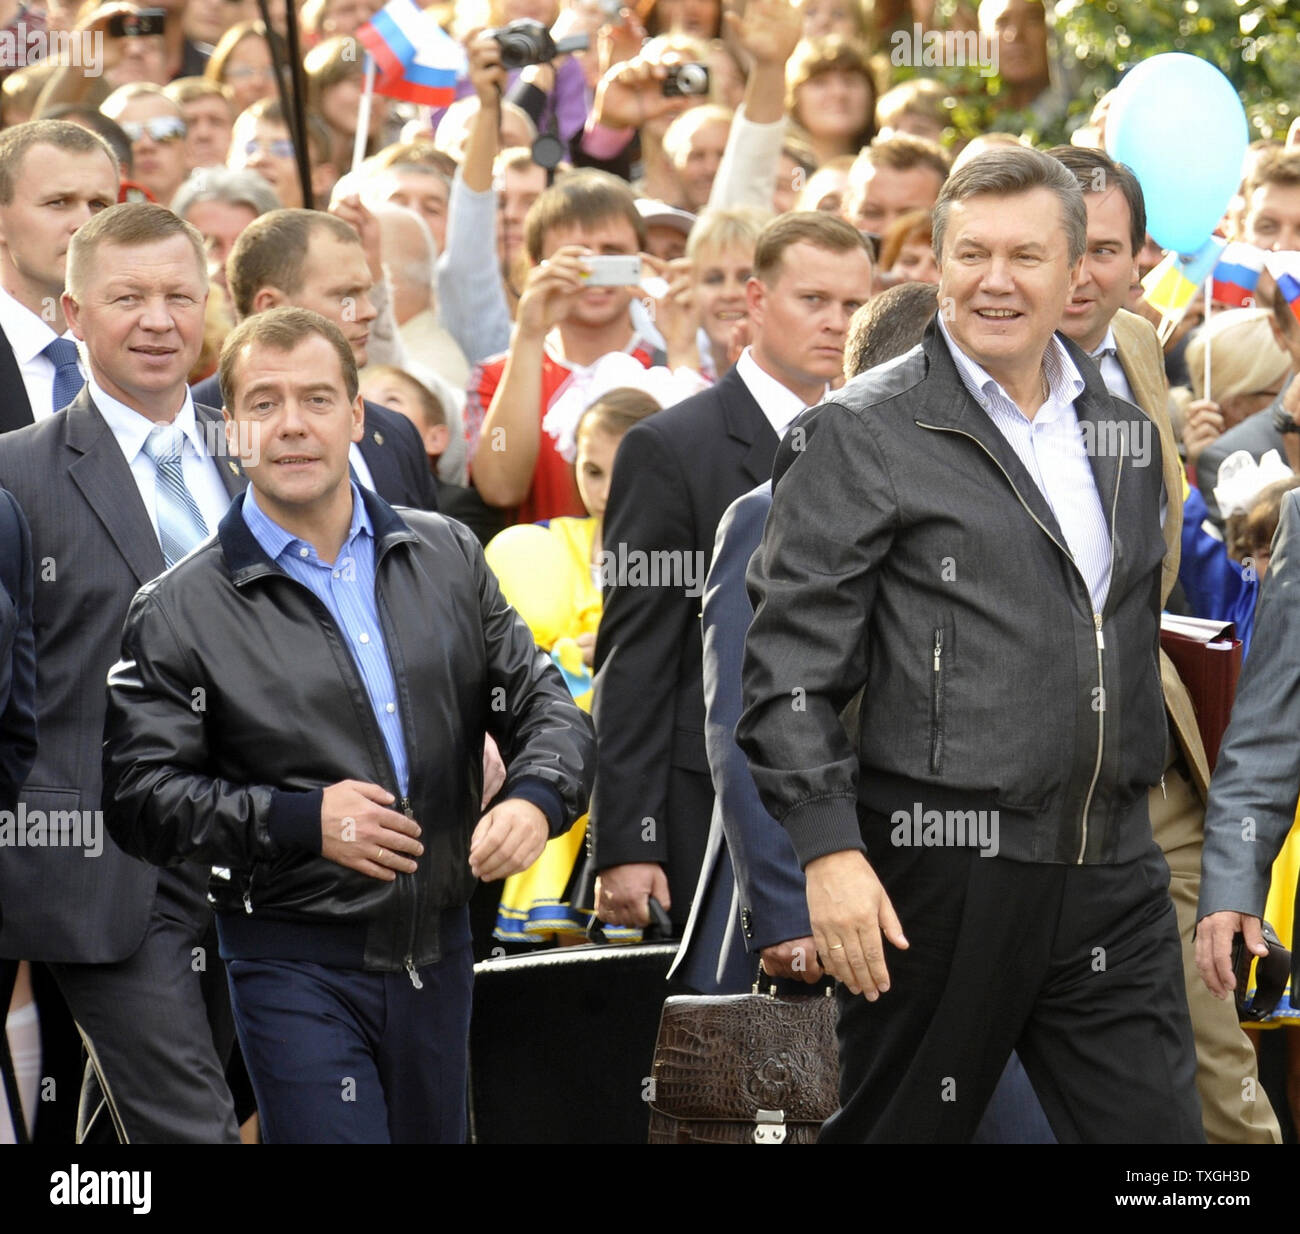 Der russische Präsident Dmitri Medwedew (L) und seinem ukrainischen Amtskollegen Viktor Janukowitsch in einem Oldtimer Rallye von St. Petersburg nach Kiew an der Grenze Stadt Glukhov September 17, 2010. UPI Foto/Alex Volgin.. Stockfoto